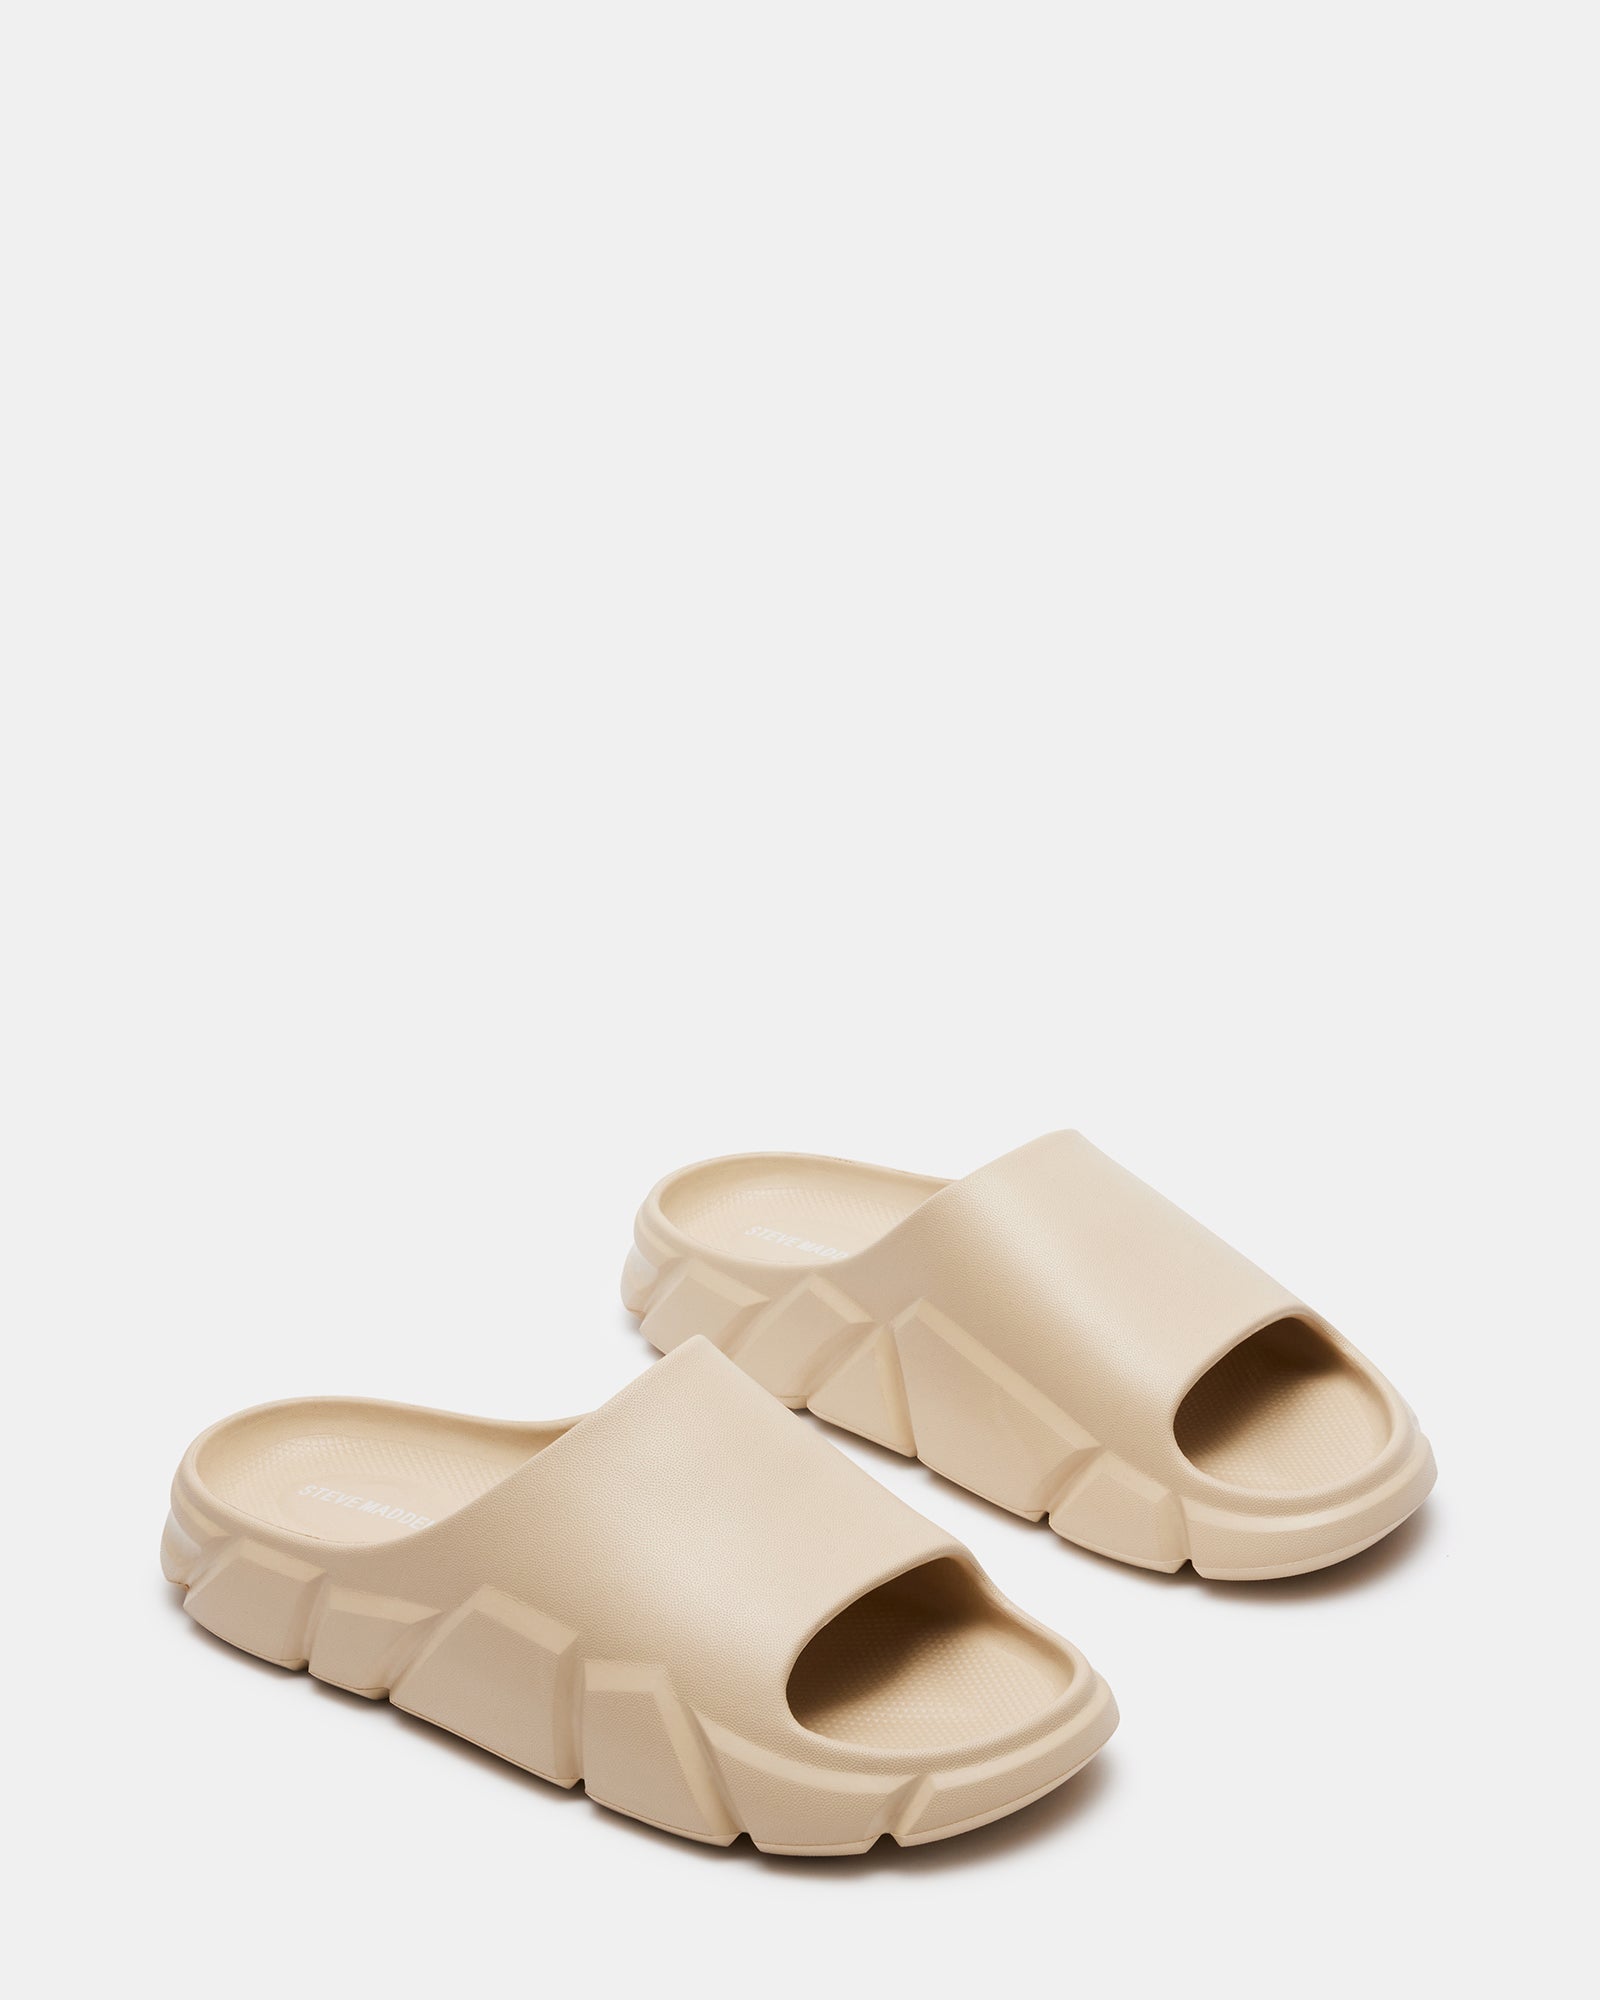 CHARGED Tan Flatform Slide Sandal | Men's Sandals – Steve Madden